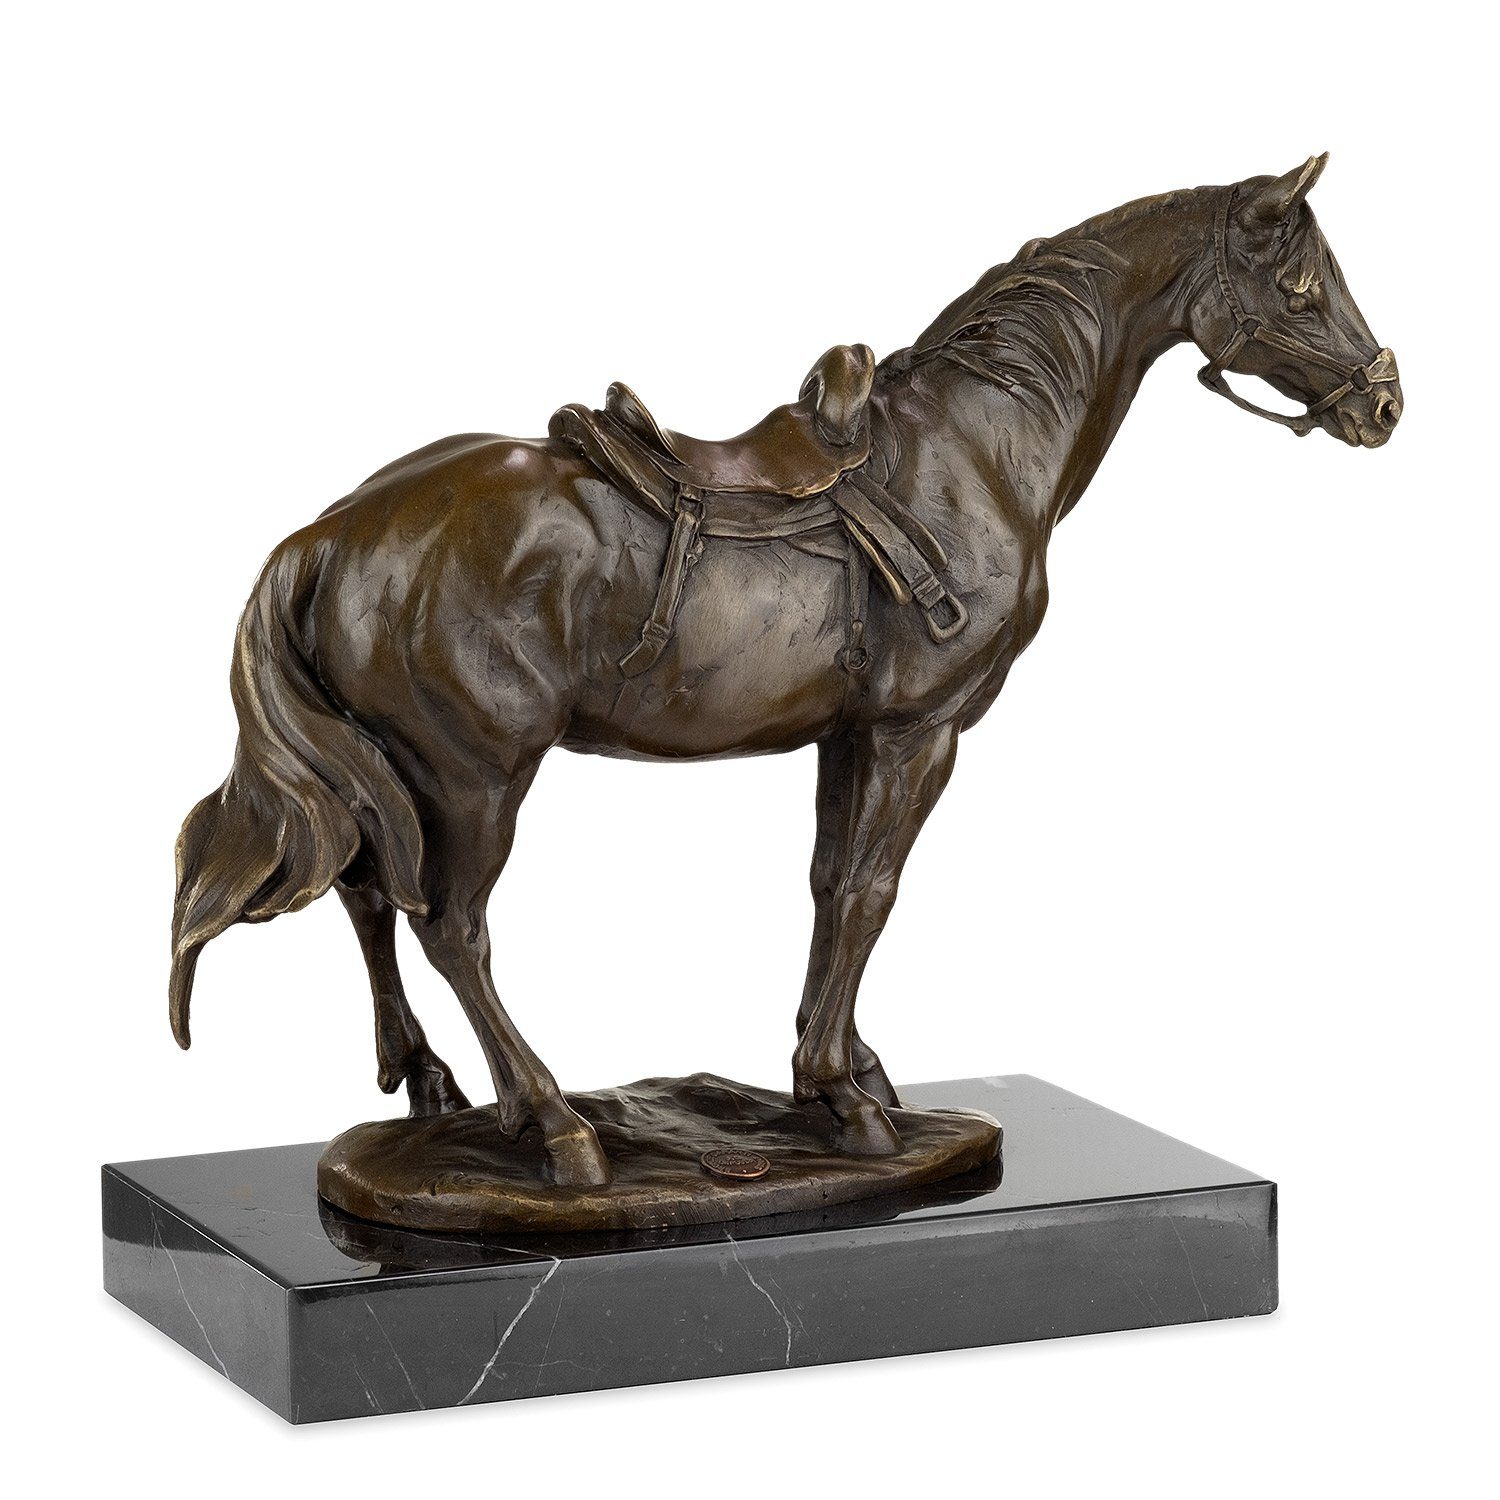 Moritz Skulptur Bronzefigur Pferd mit Figuren Halfter, Sattel Skulpturen Antik-Stil Statue